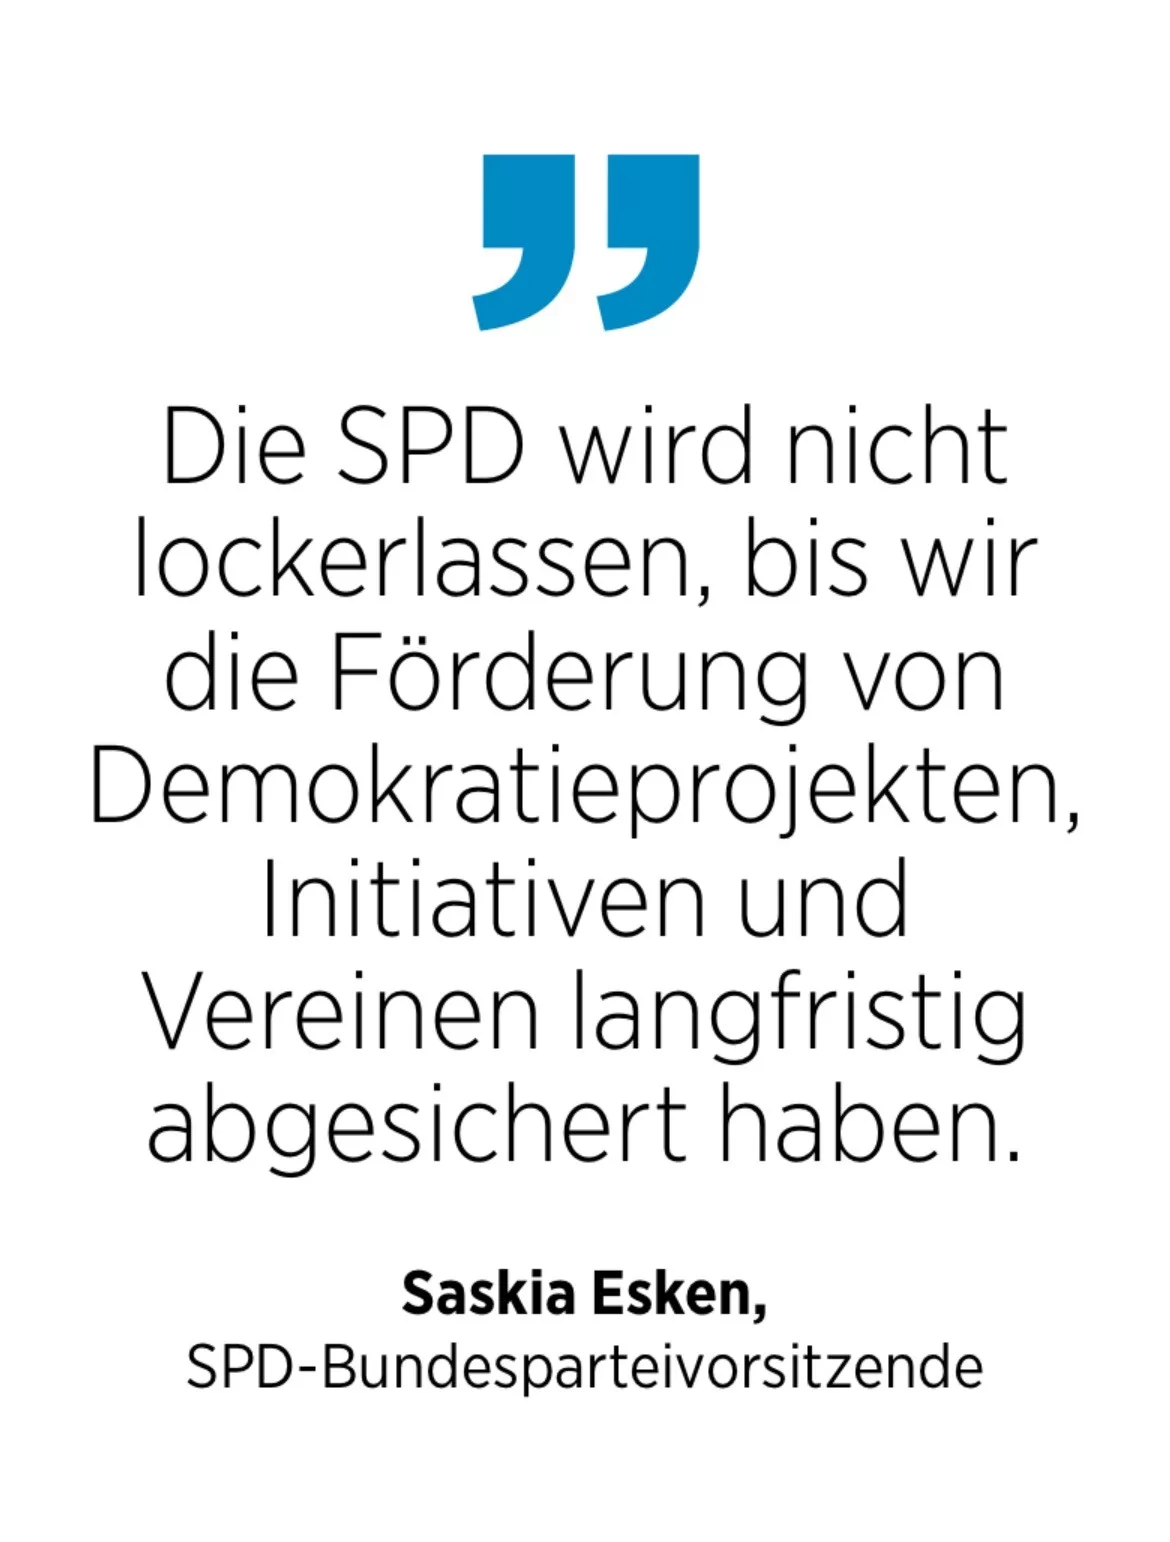 Saskia Esken,
SPD-Bundesparteivorsitzende: Die SPD wird nicht lockerlassen, bis wir die Förderung von Demokratieprojekten, Initiativen und Vereinen langfristig abgesichert haben.